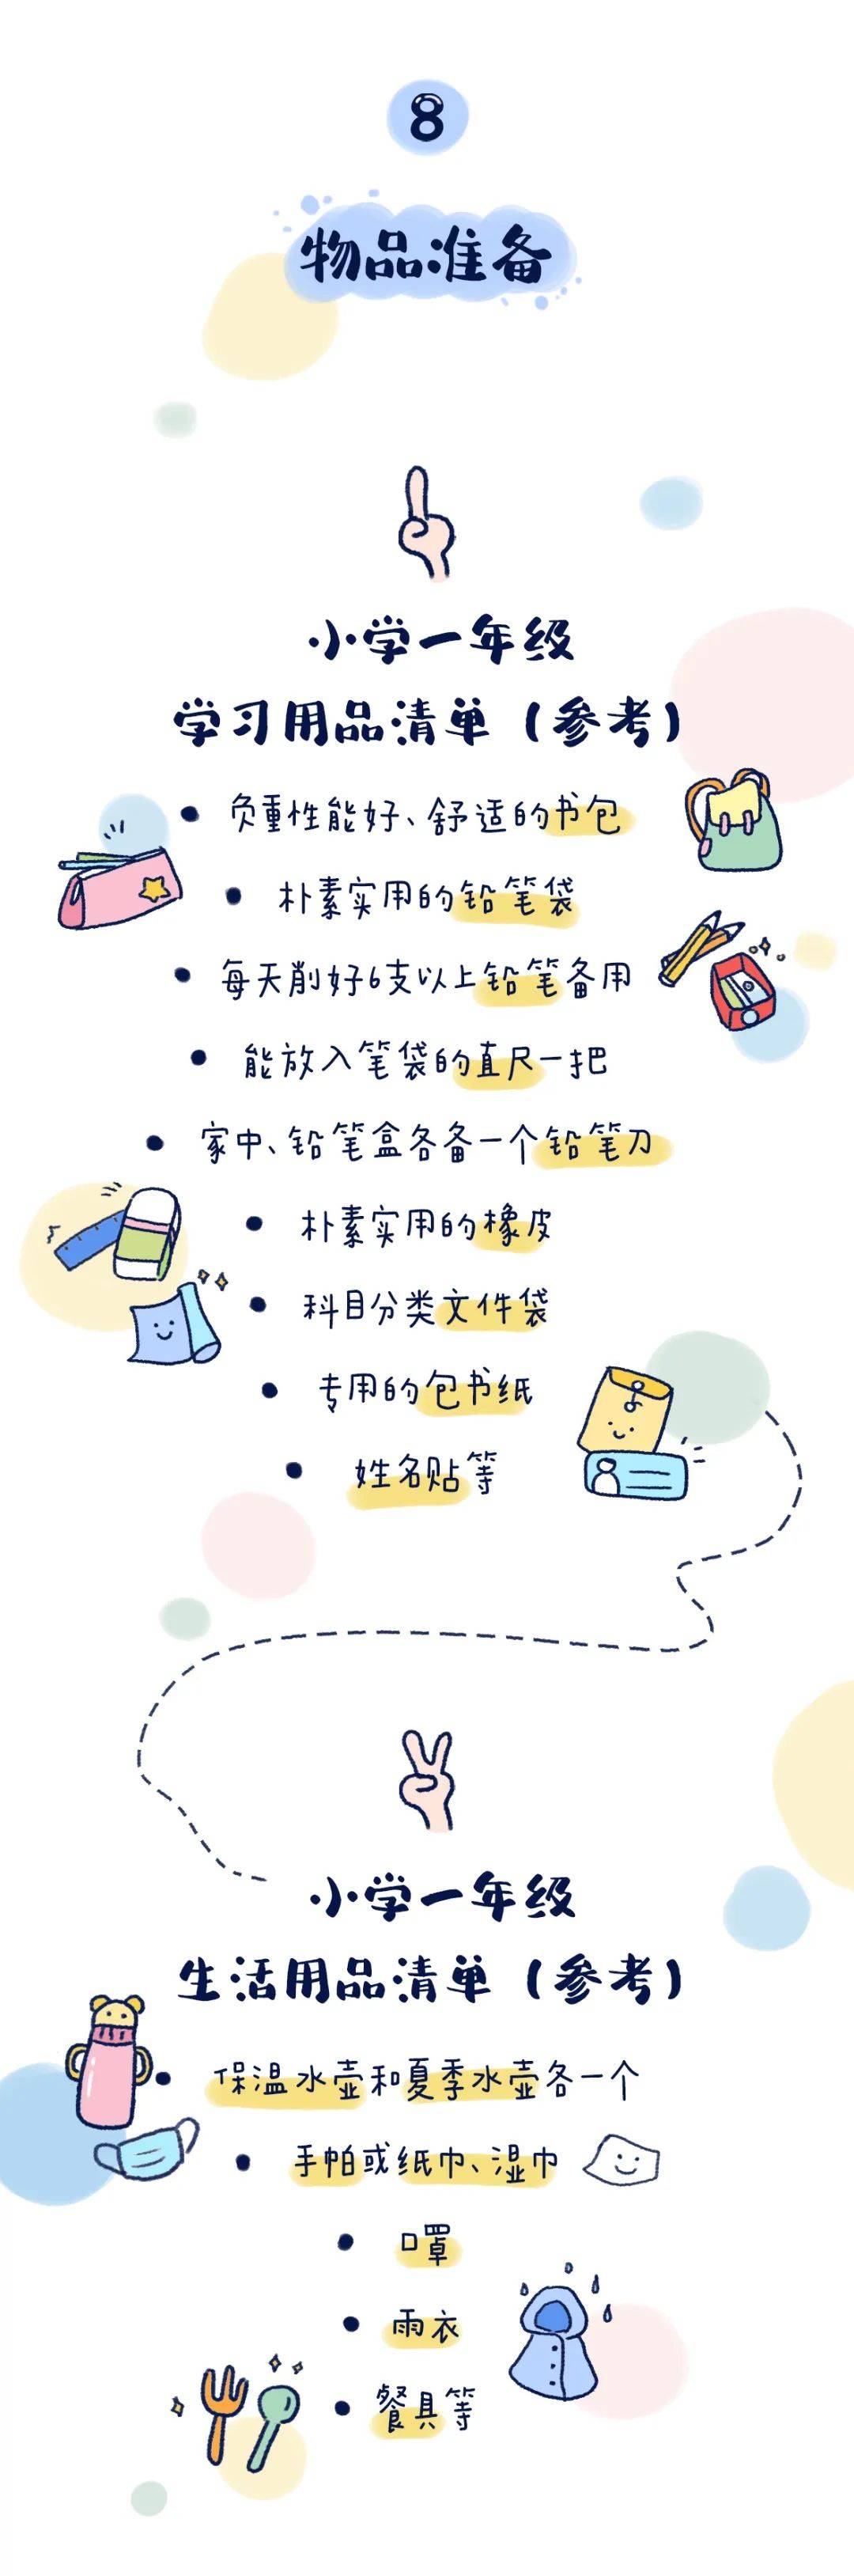 饿了么：香港马会免费综合正料-蓝皮书指上海职业教育国际化发展路径清晰